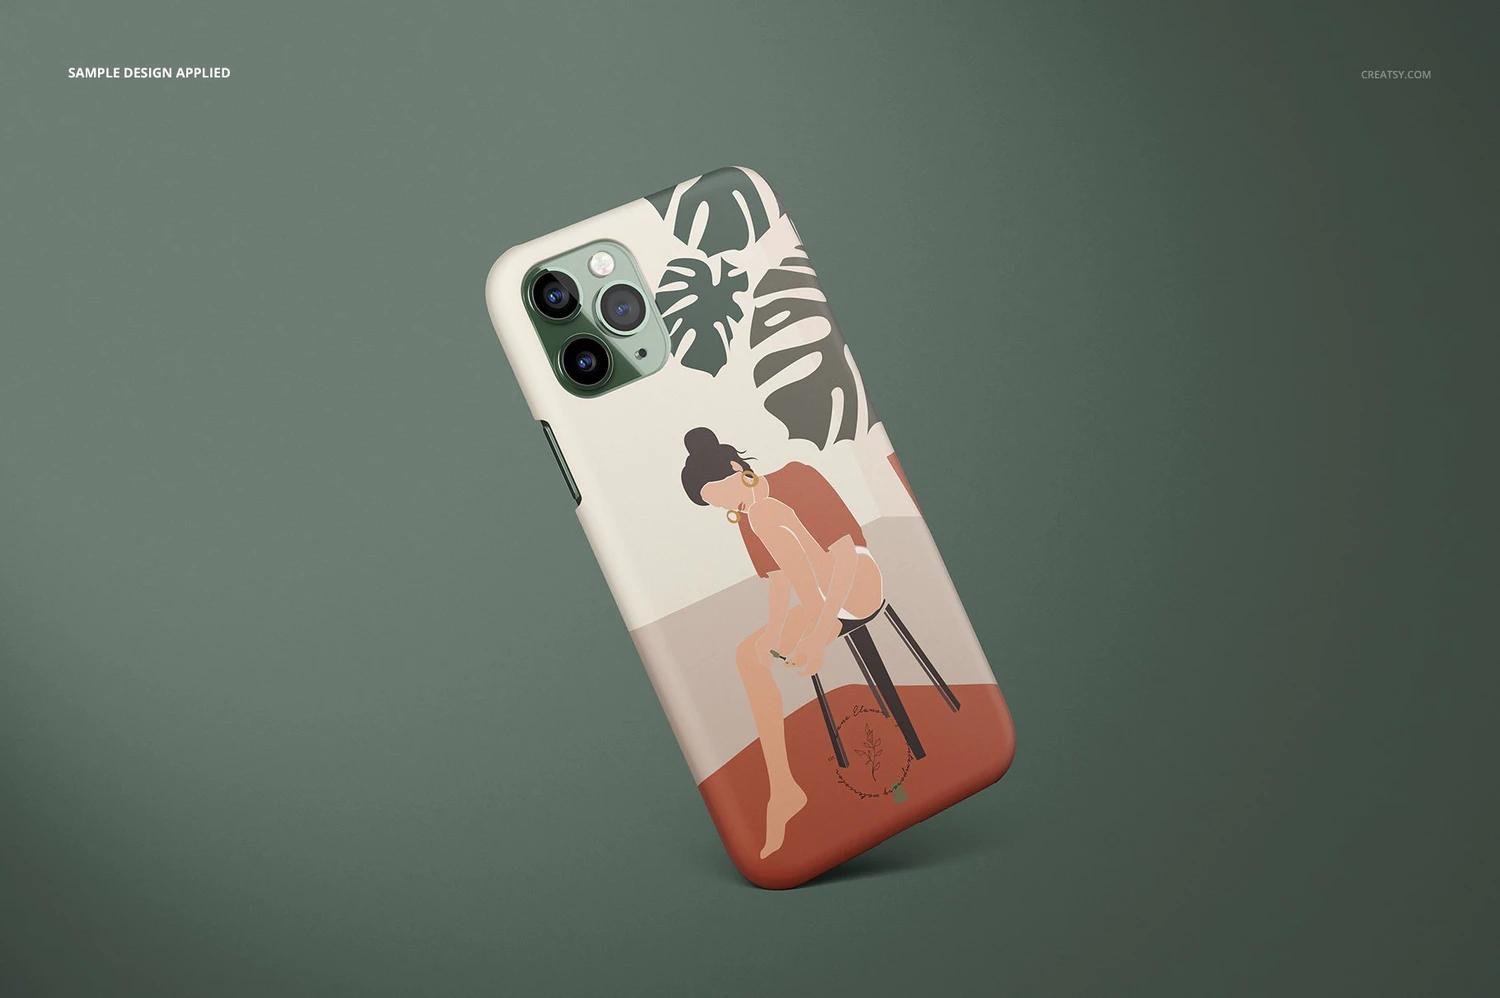 3375 哑光磨砂Phone 11 Pro手机保护壳外观设计样机模板套装 iPhone 11 Pro Matte Snap Case Mockup